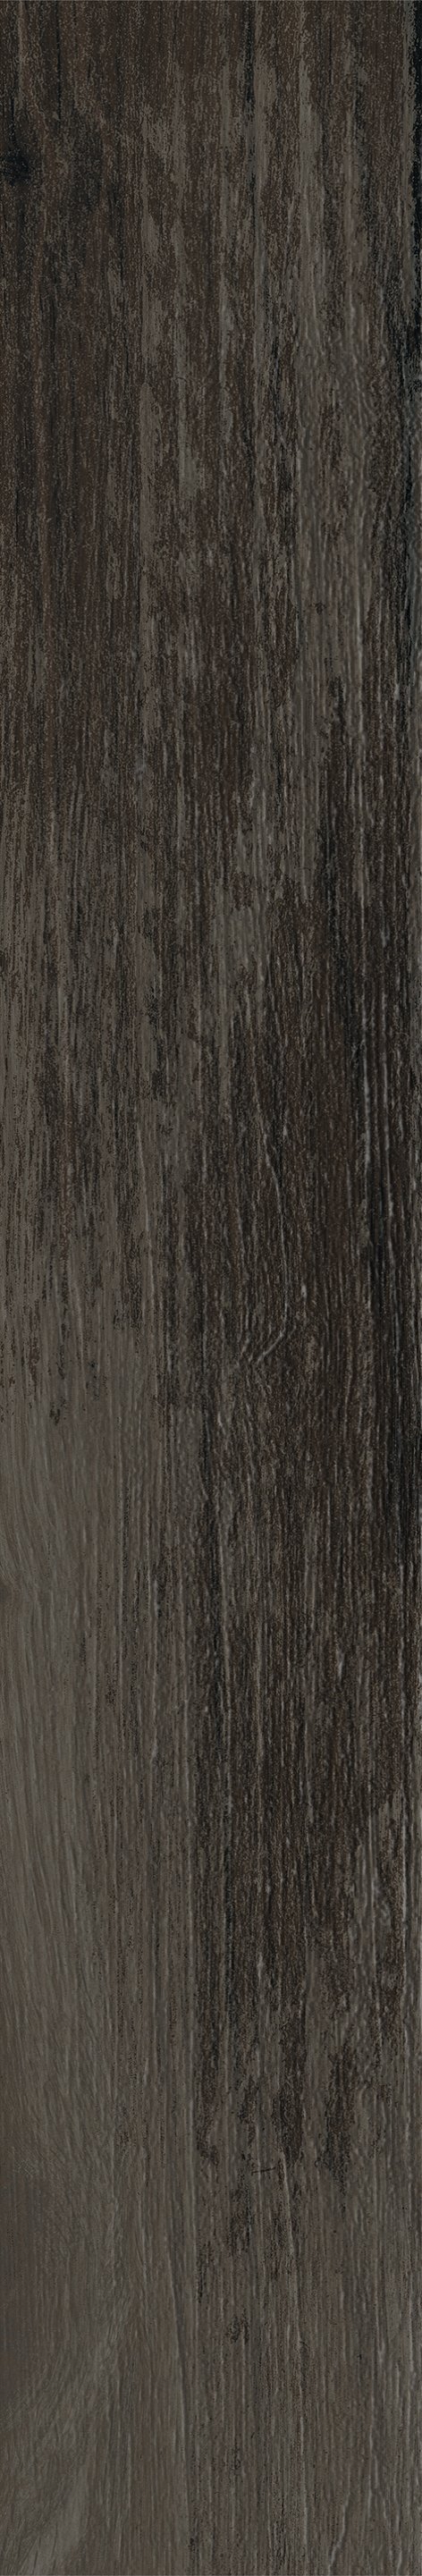 Плитка из керамогранита матовая Italon Грув 9.5x60 коричневый (610010001888) плитка из керамогранита матовая italon грув 20x120 коричневый 610010001884